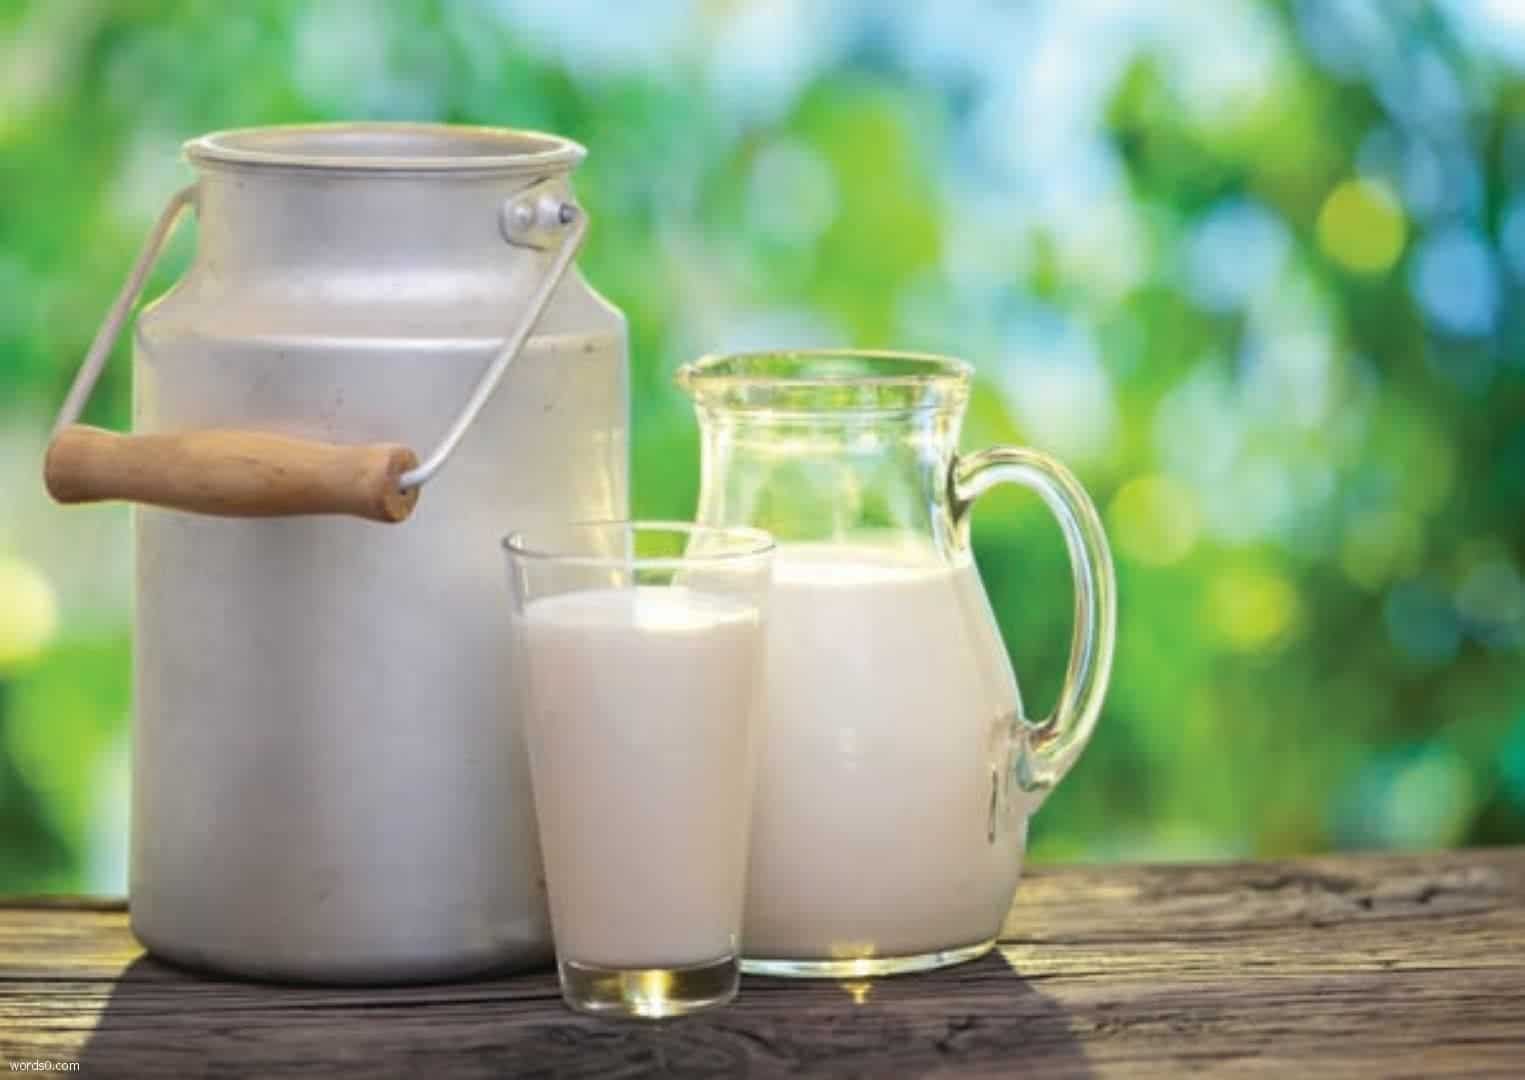 تفسير رؤية او شرب الحليب بالمنام كلمات